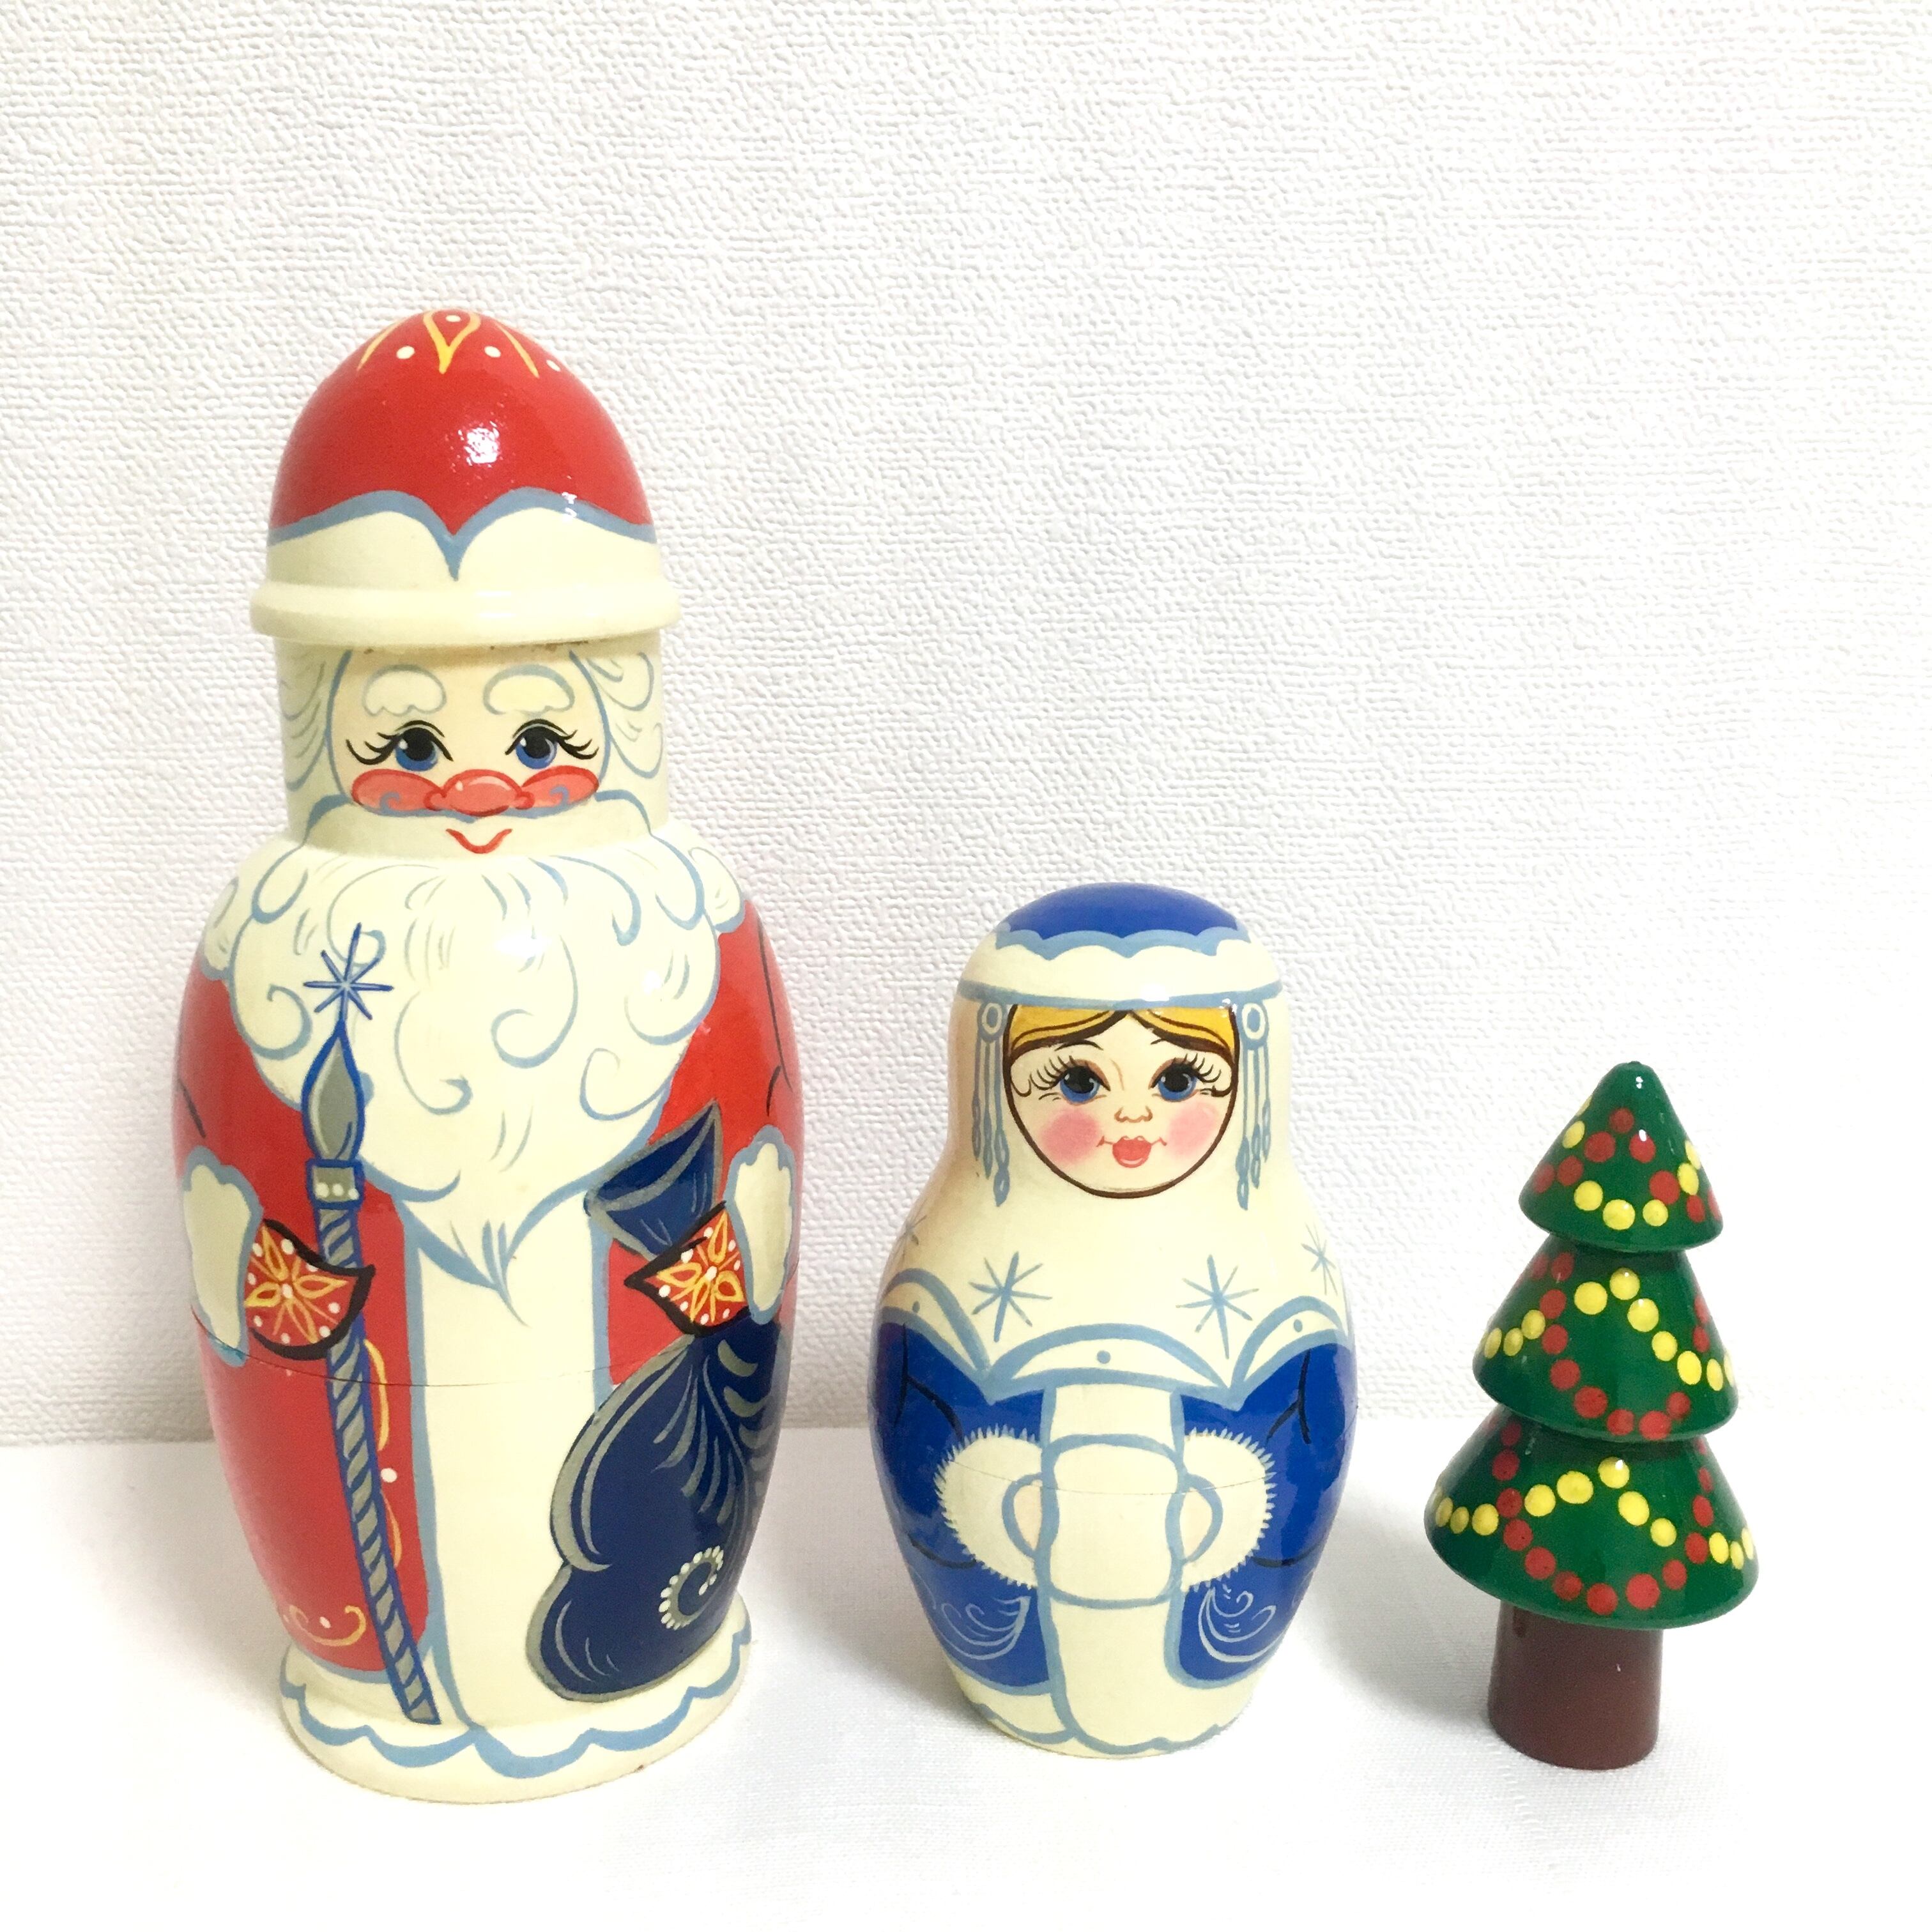 ハイクオリティ マトリョーシカ ロシア クリスマス 人形 民芸品 土産物 手作り人形